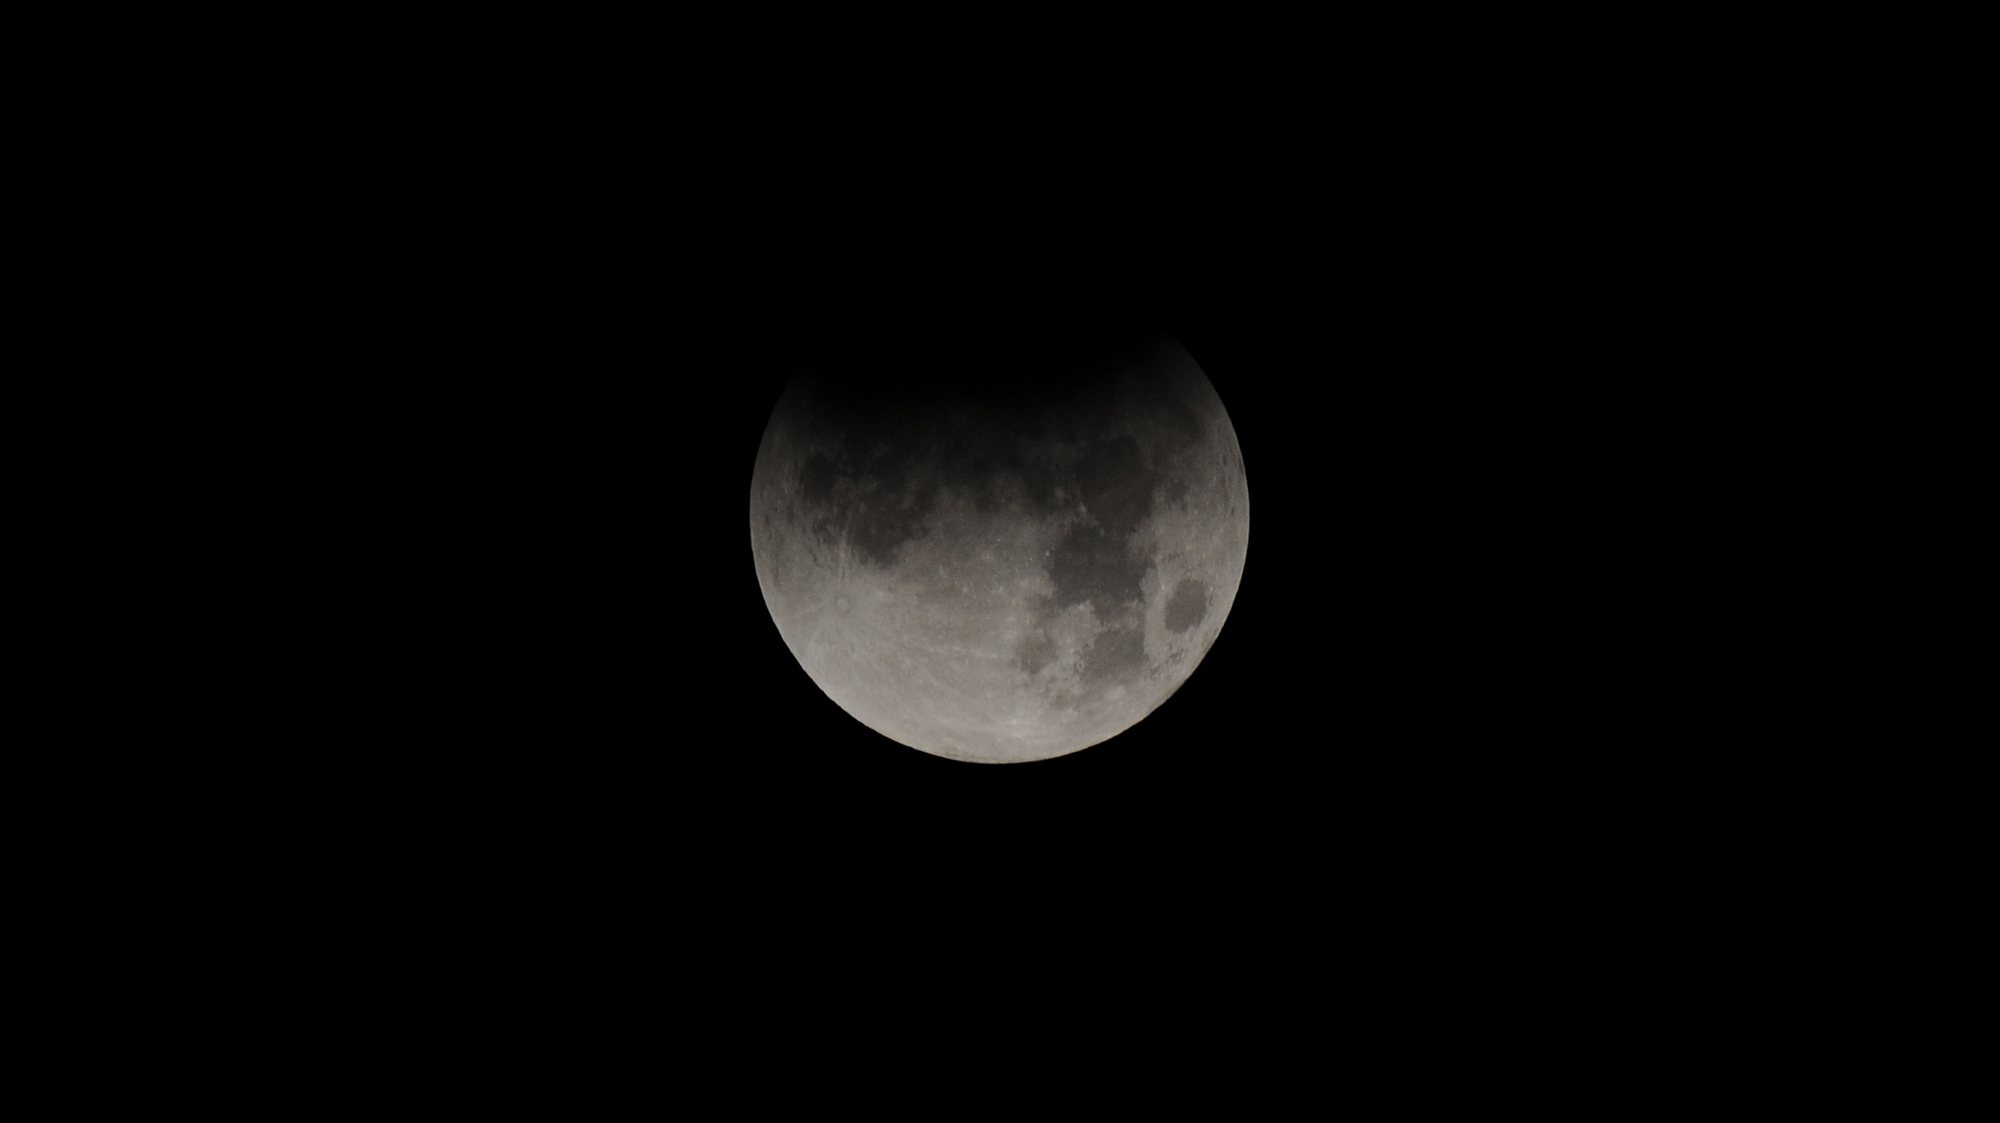 Um eclipse parcial da Lua ocorre quando o satélite penetra parcialmente no cone de sombra projetado pela Terra